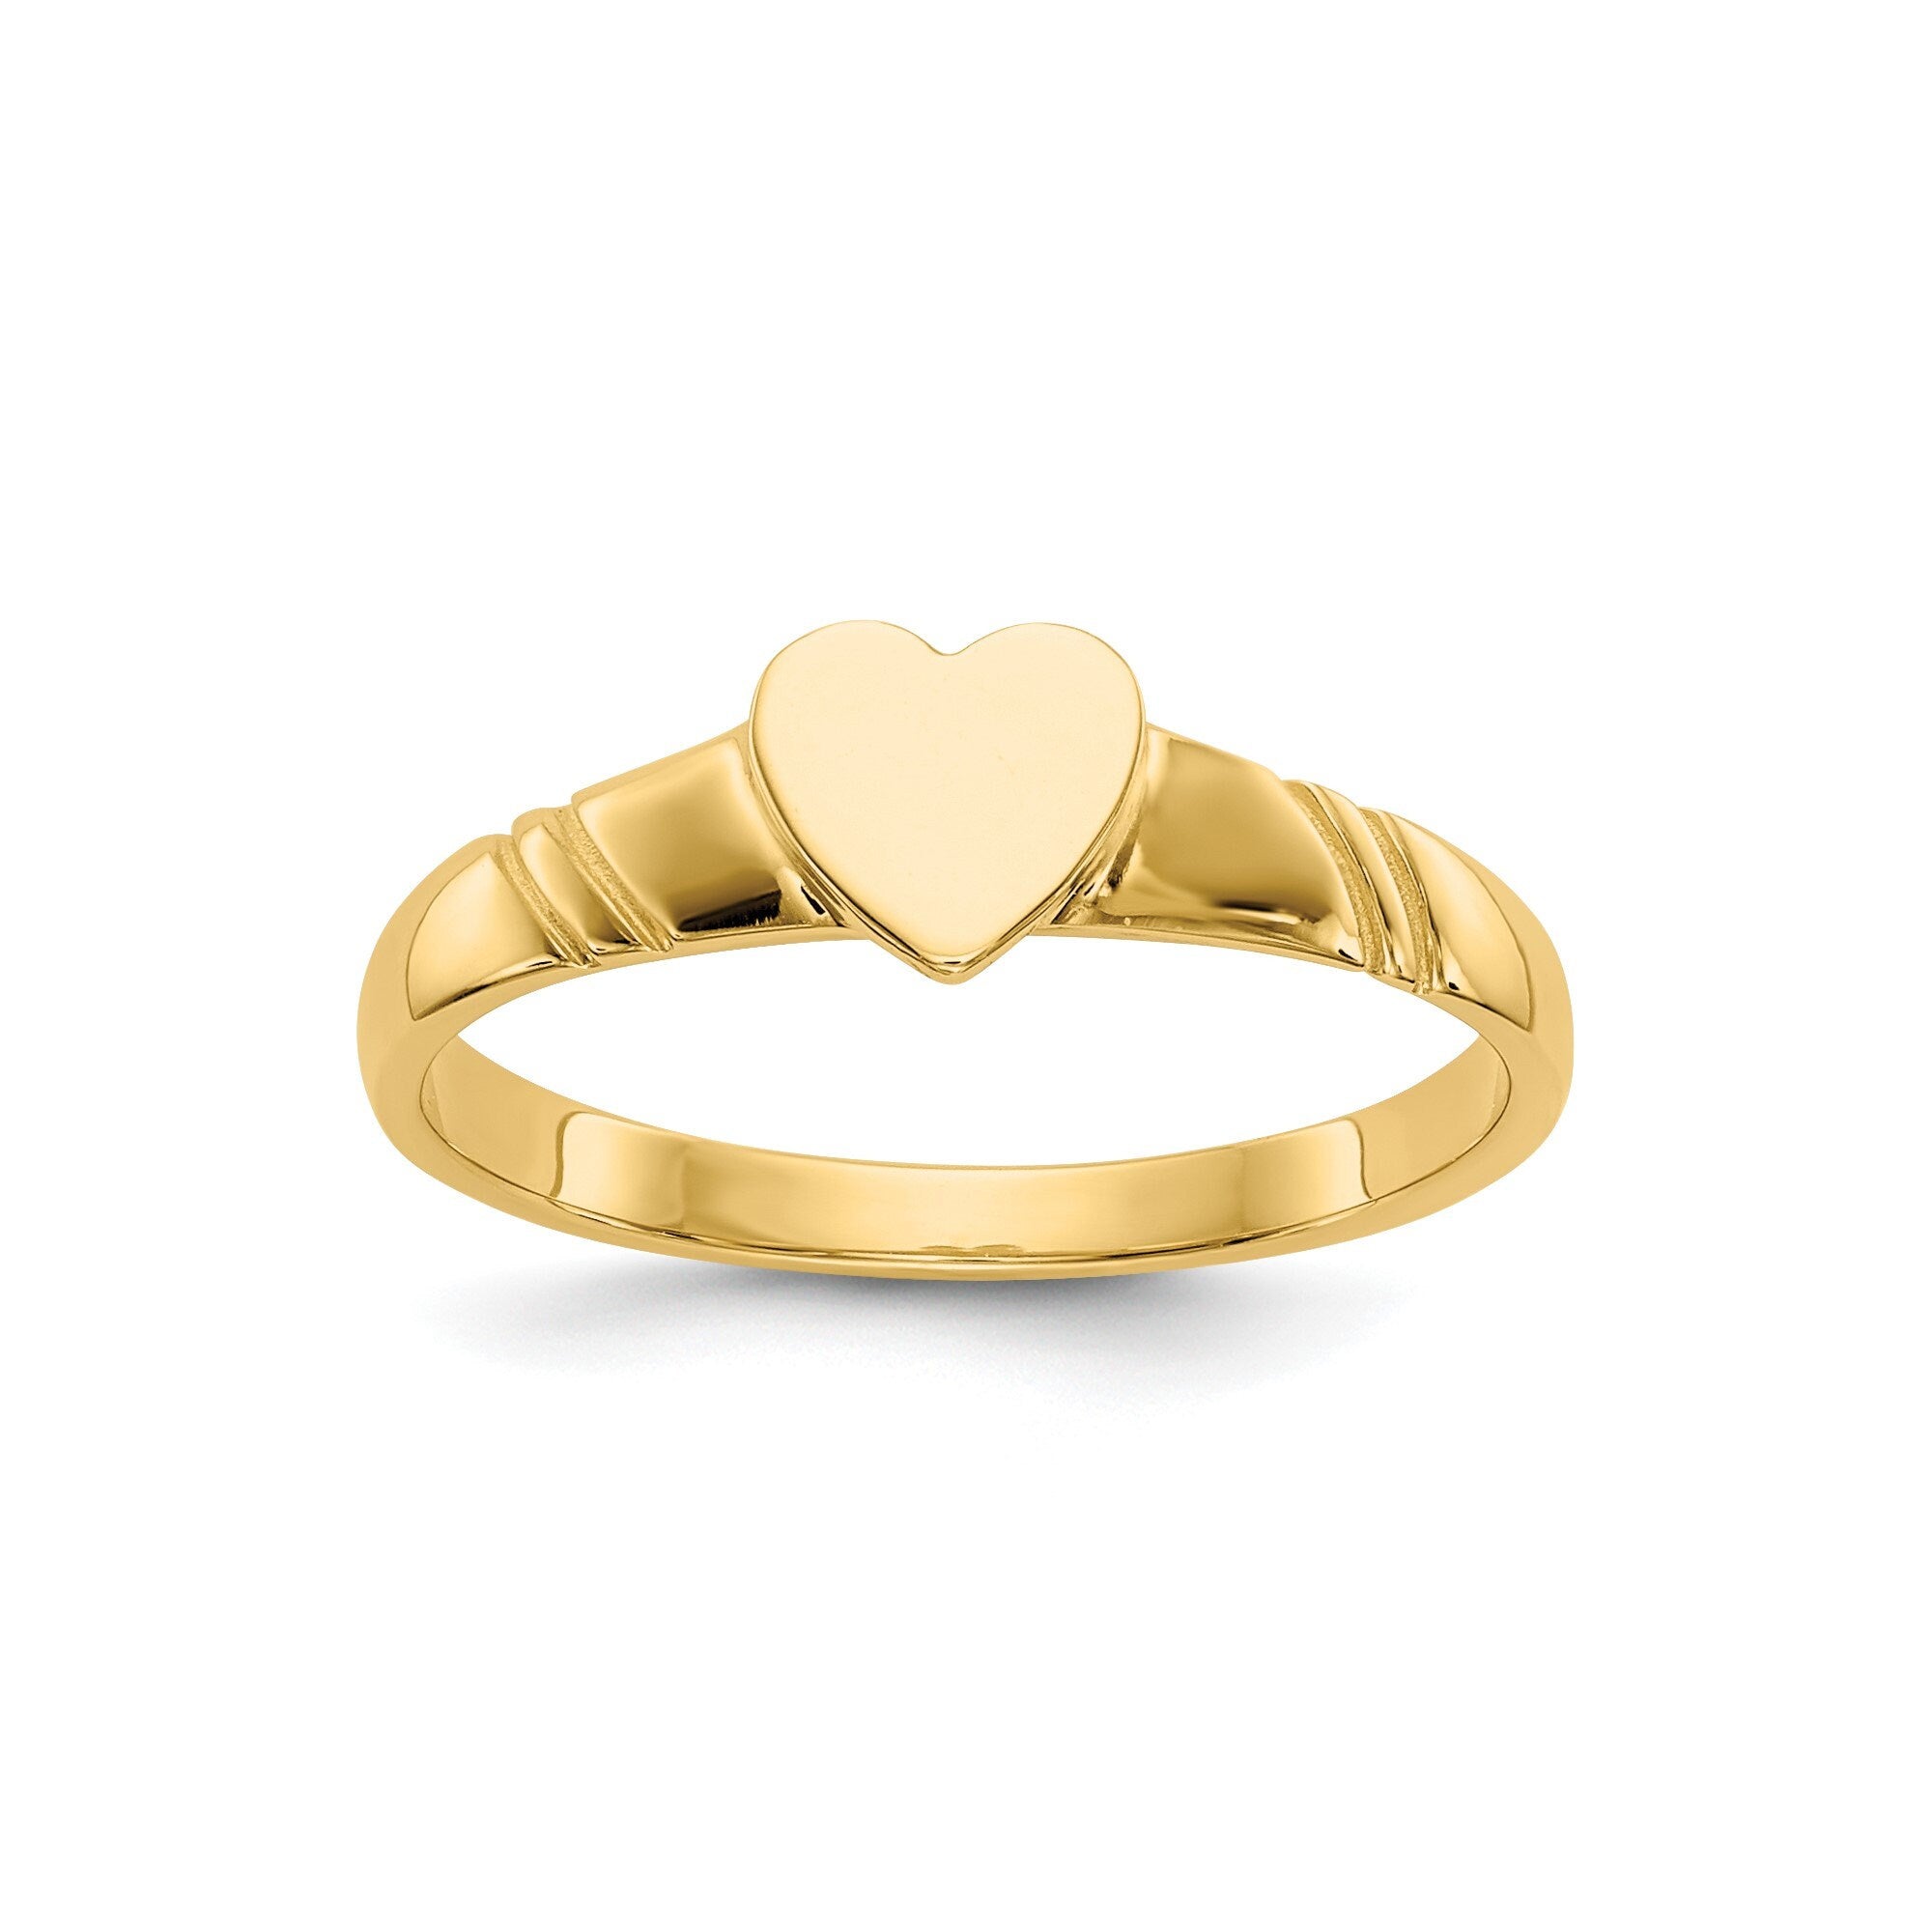 18k Baby Gold Ring at Rs 1500 in Kolkata | ID: 2851060727362